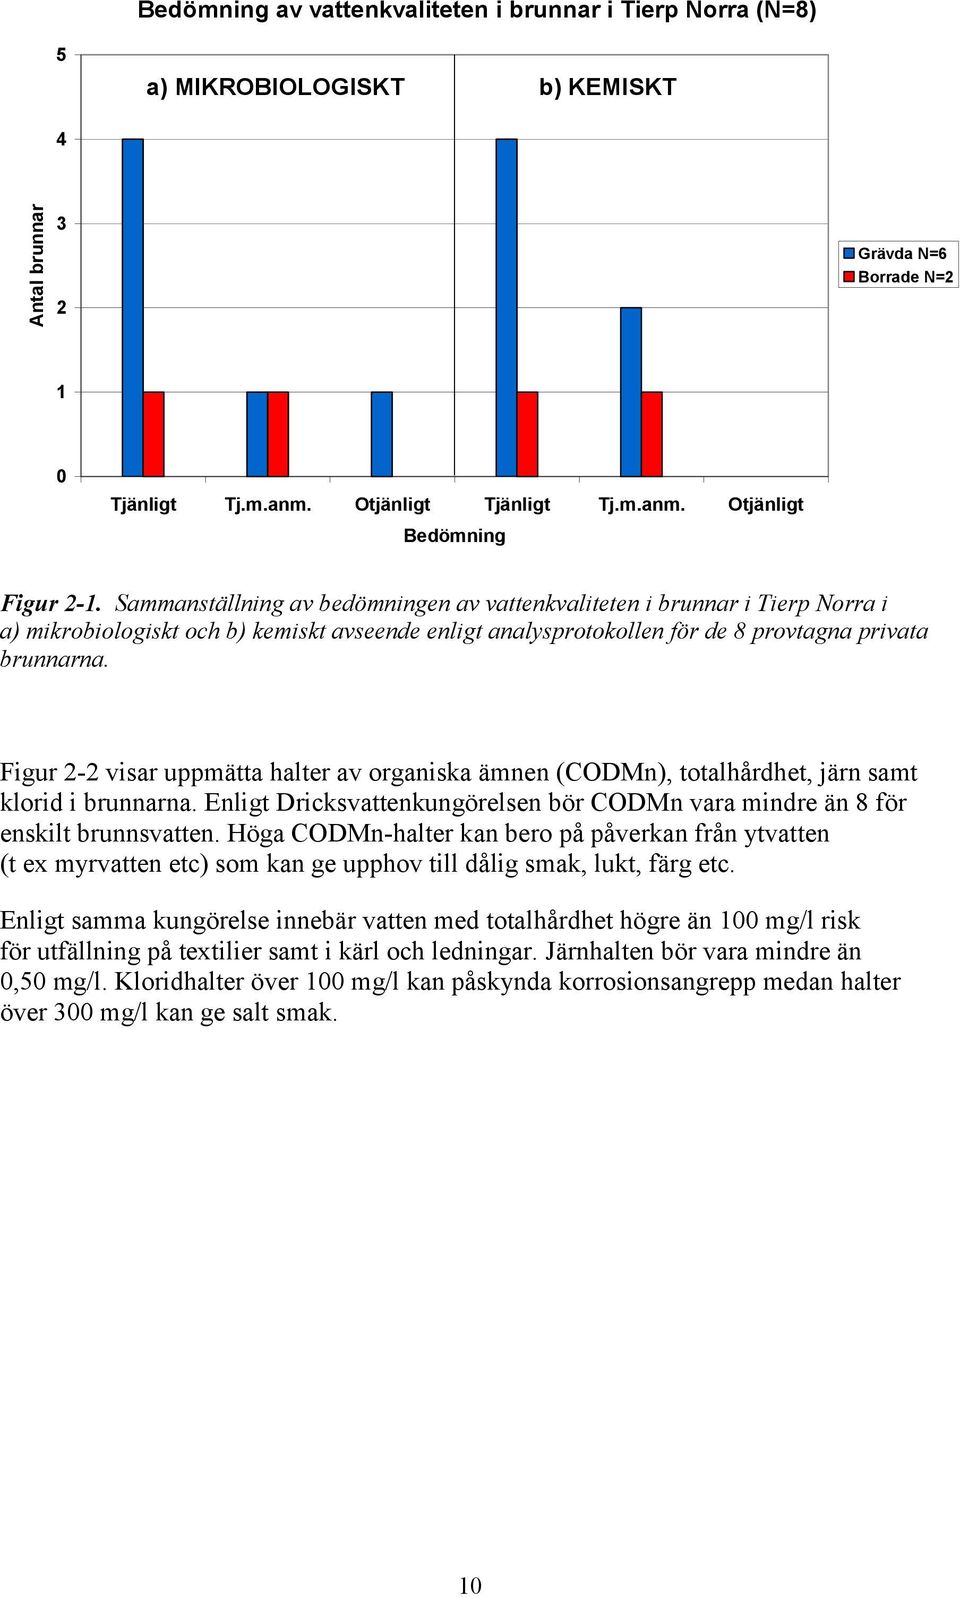 Figur 2-2 visar uppmätta halter av organiska ämnen (CODMn), totalhårdhet, järn samt klorid i brunnarna. Enligt Dricksvattenkungörelsen bör CODMn vara mindre än 8 för enskilt brunnsvatten.